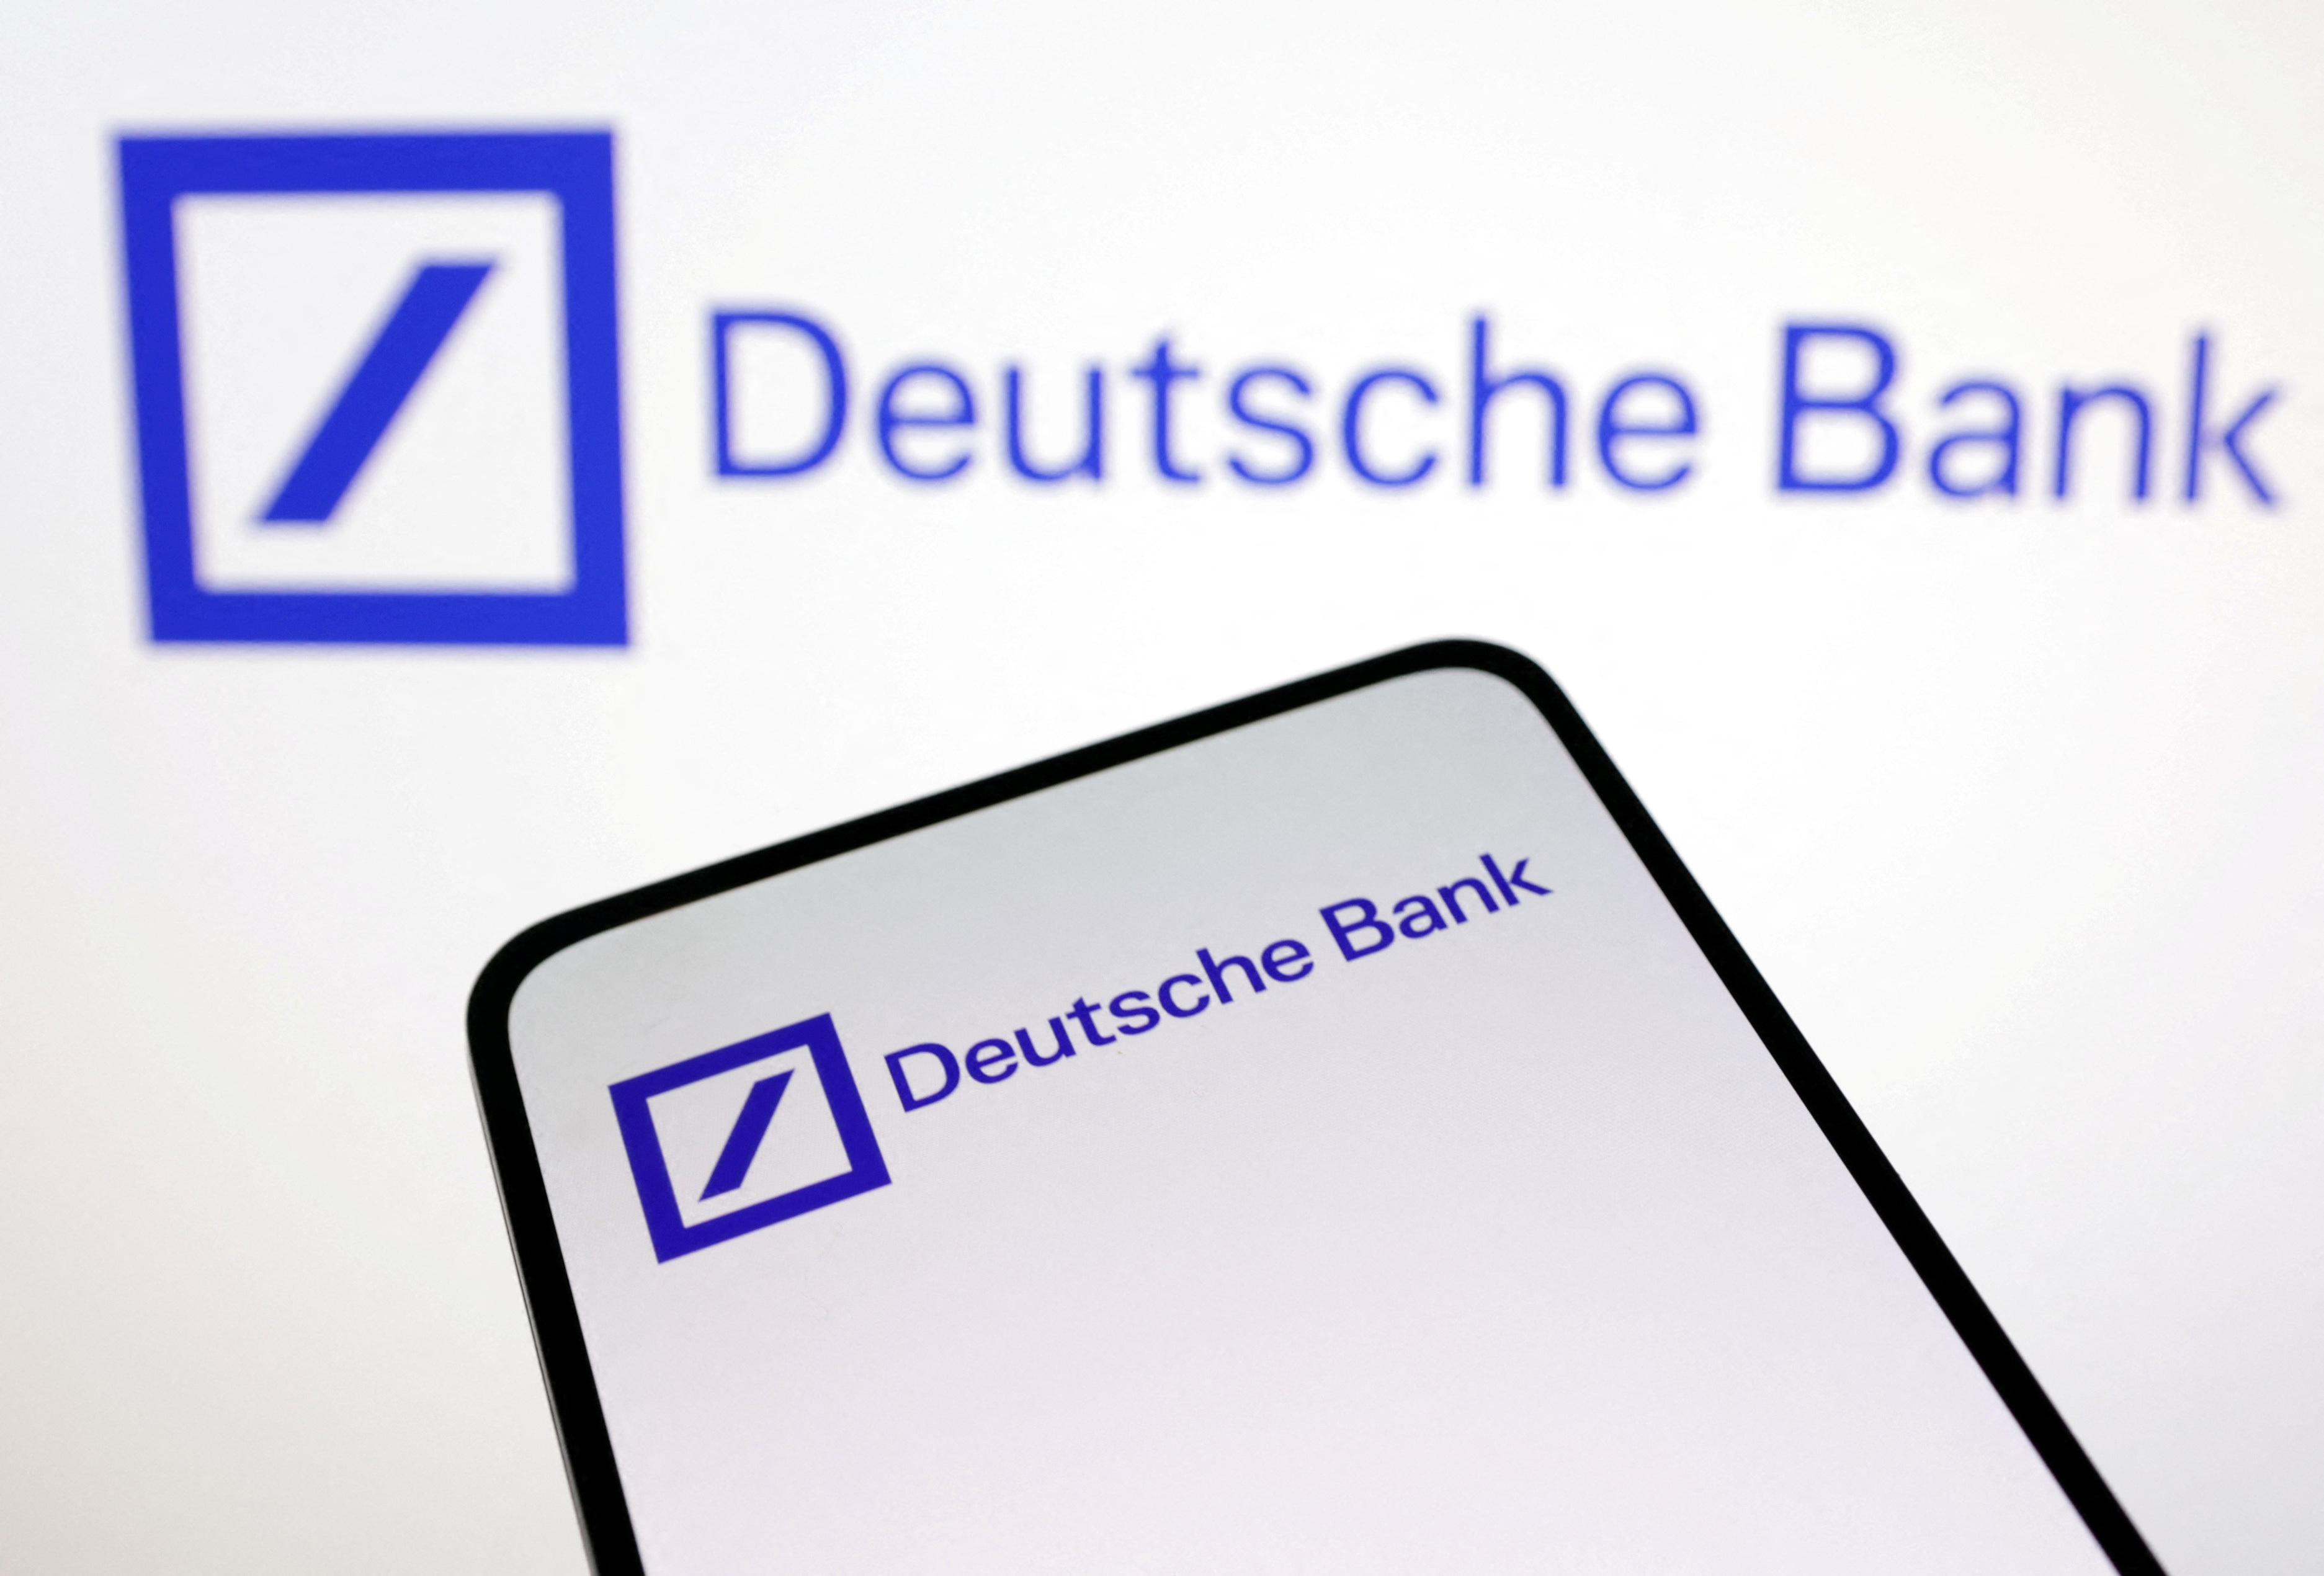 Illustration shows Deutsche Bank logo